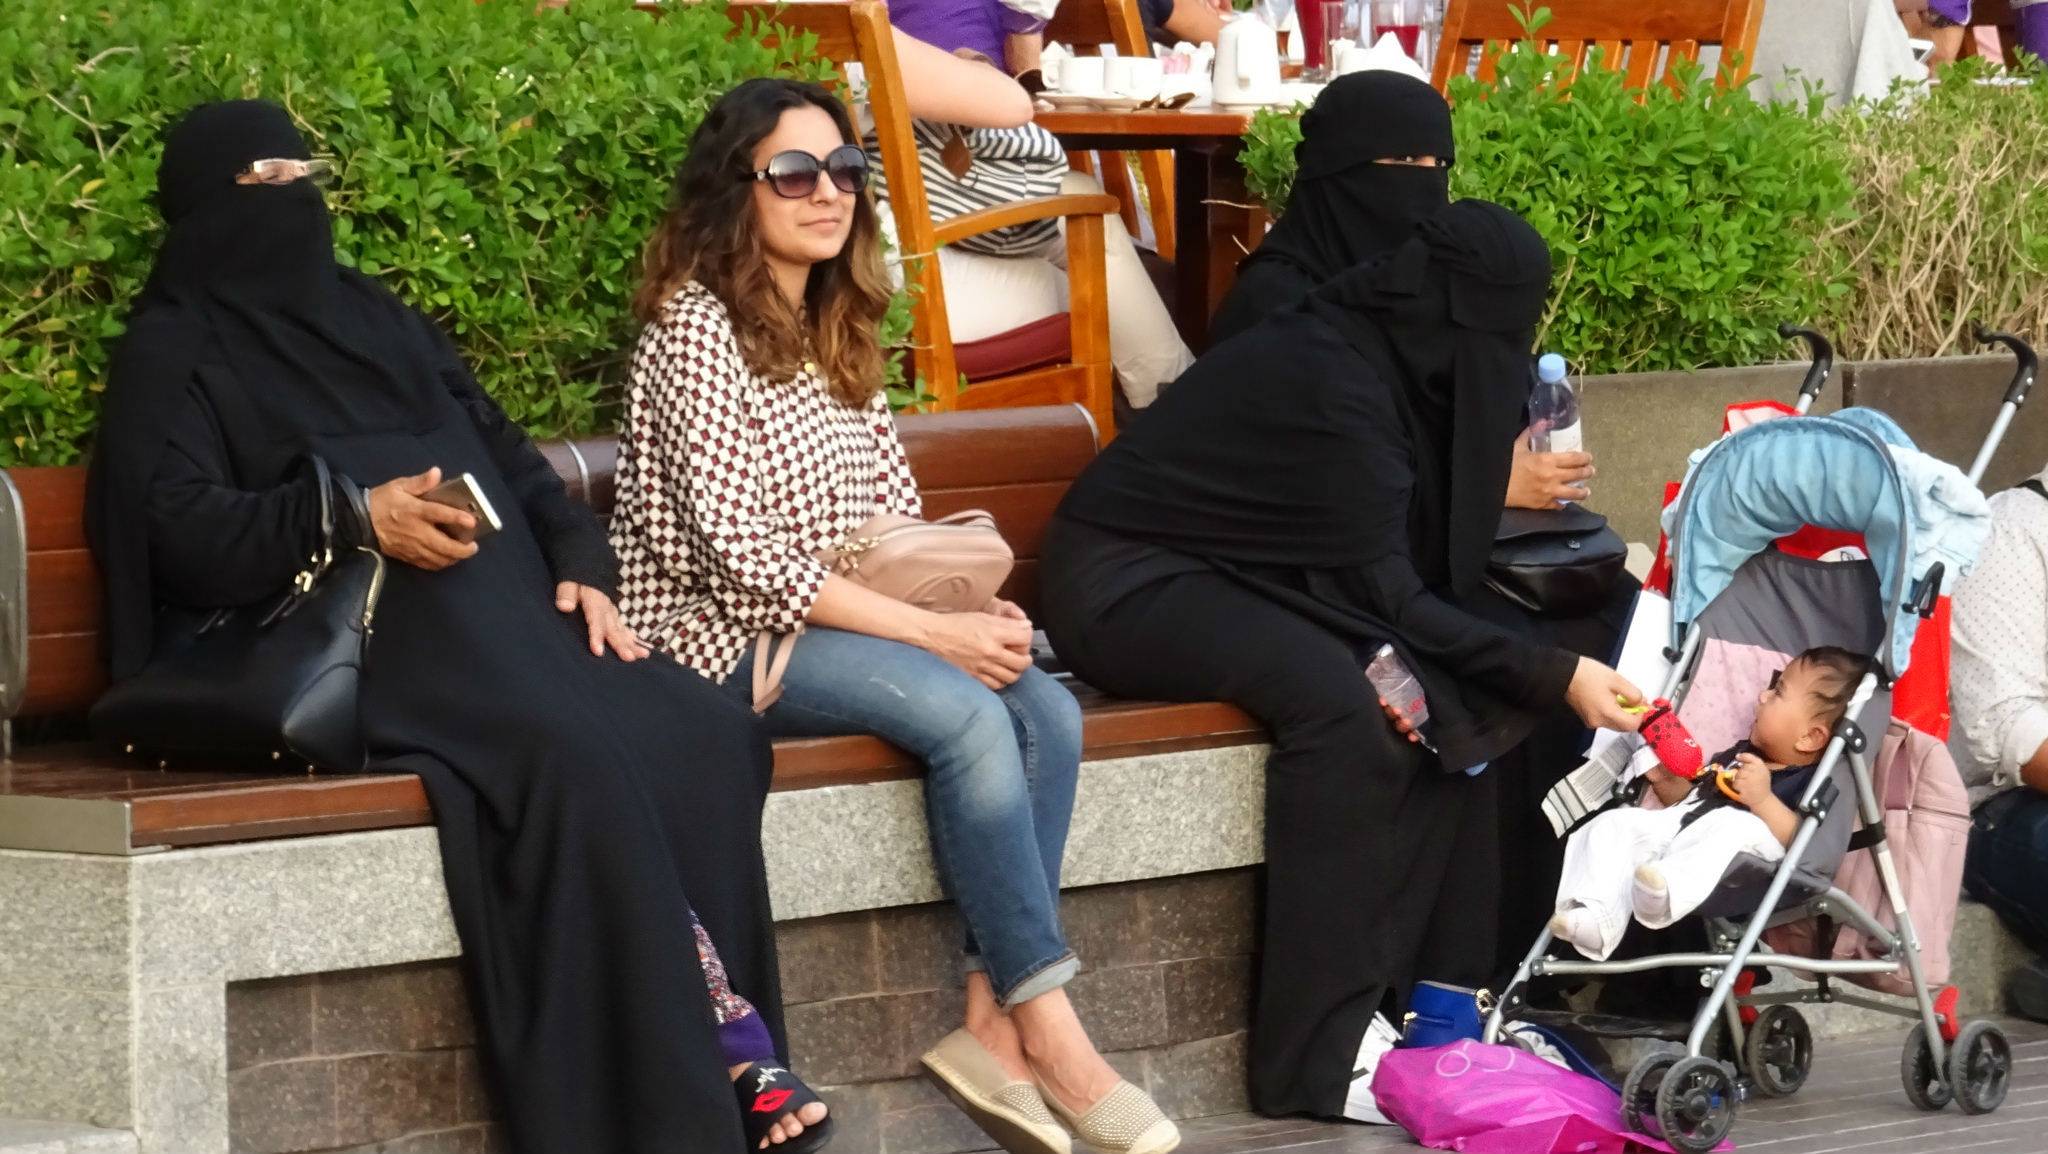 UAE residents are splashing out during Ramadan